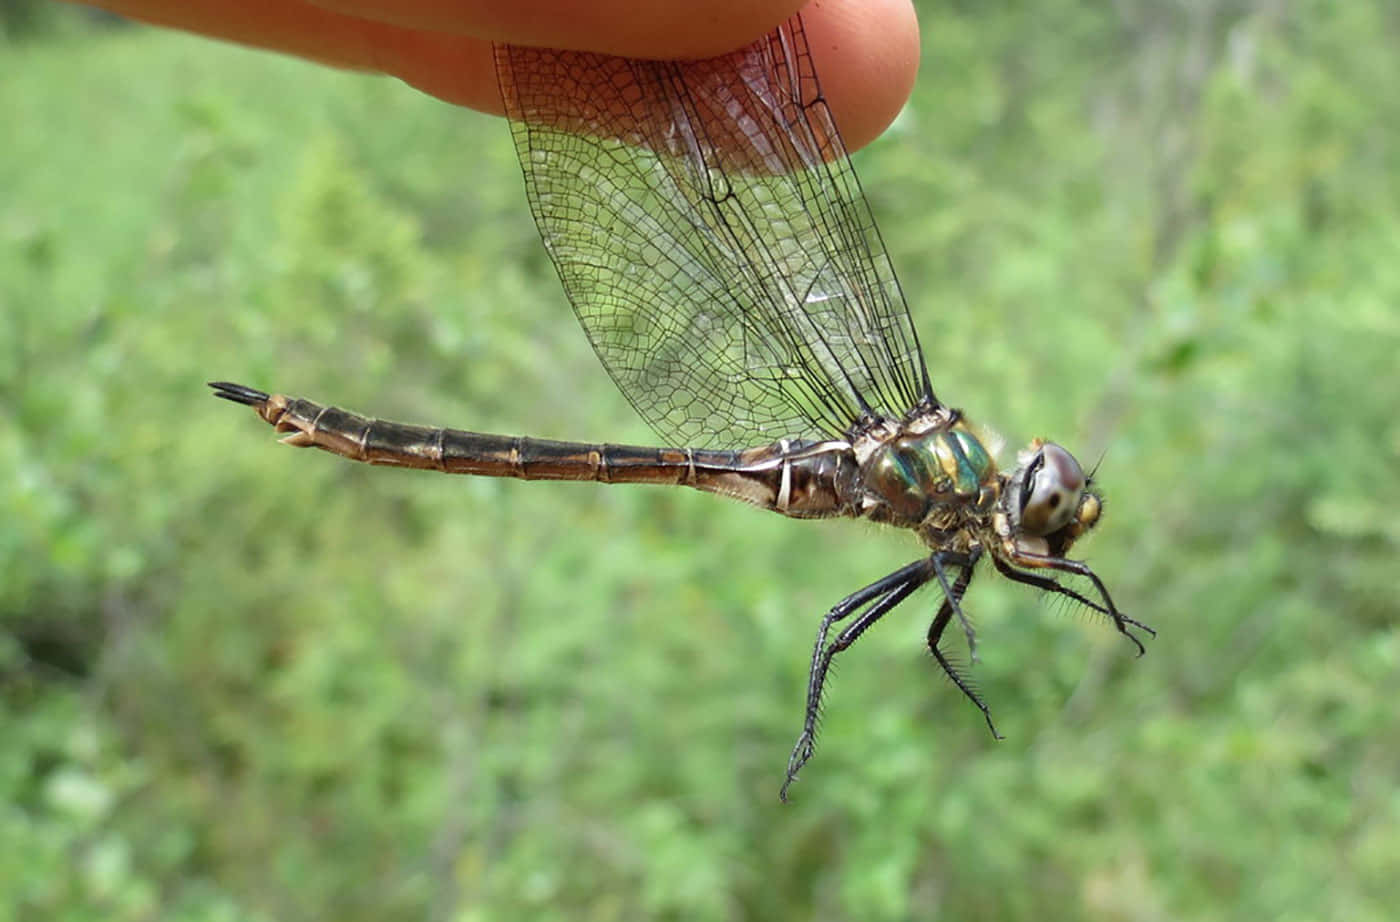 Drakflugsbilder(dragonfly Pictures)